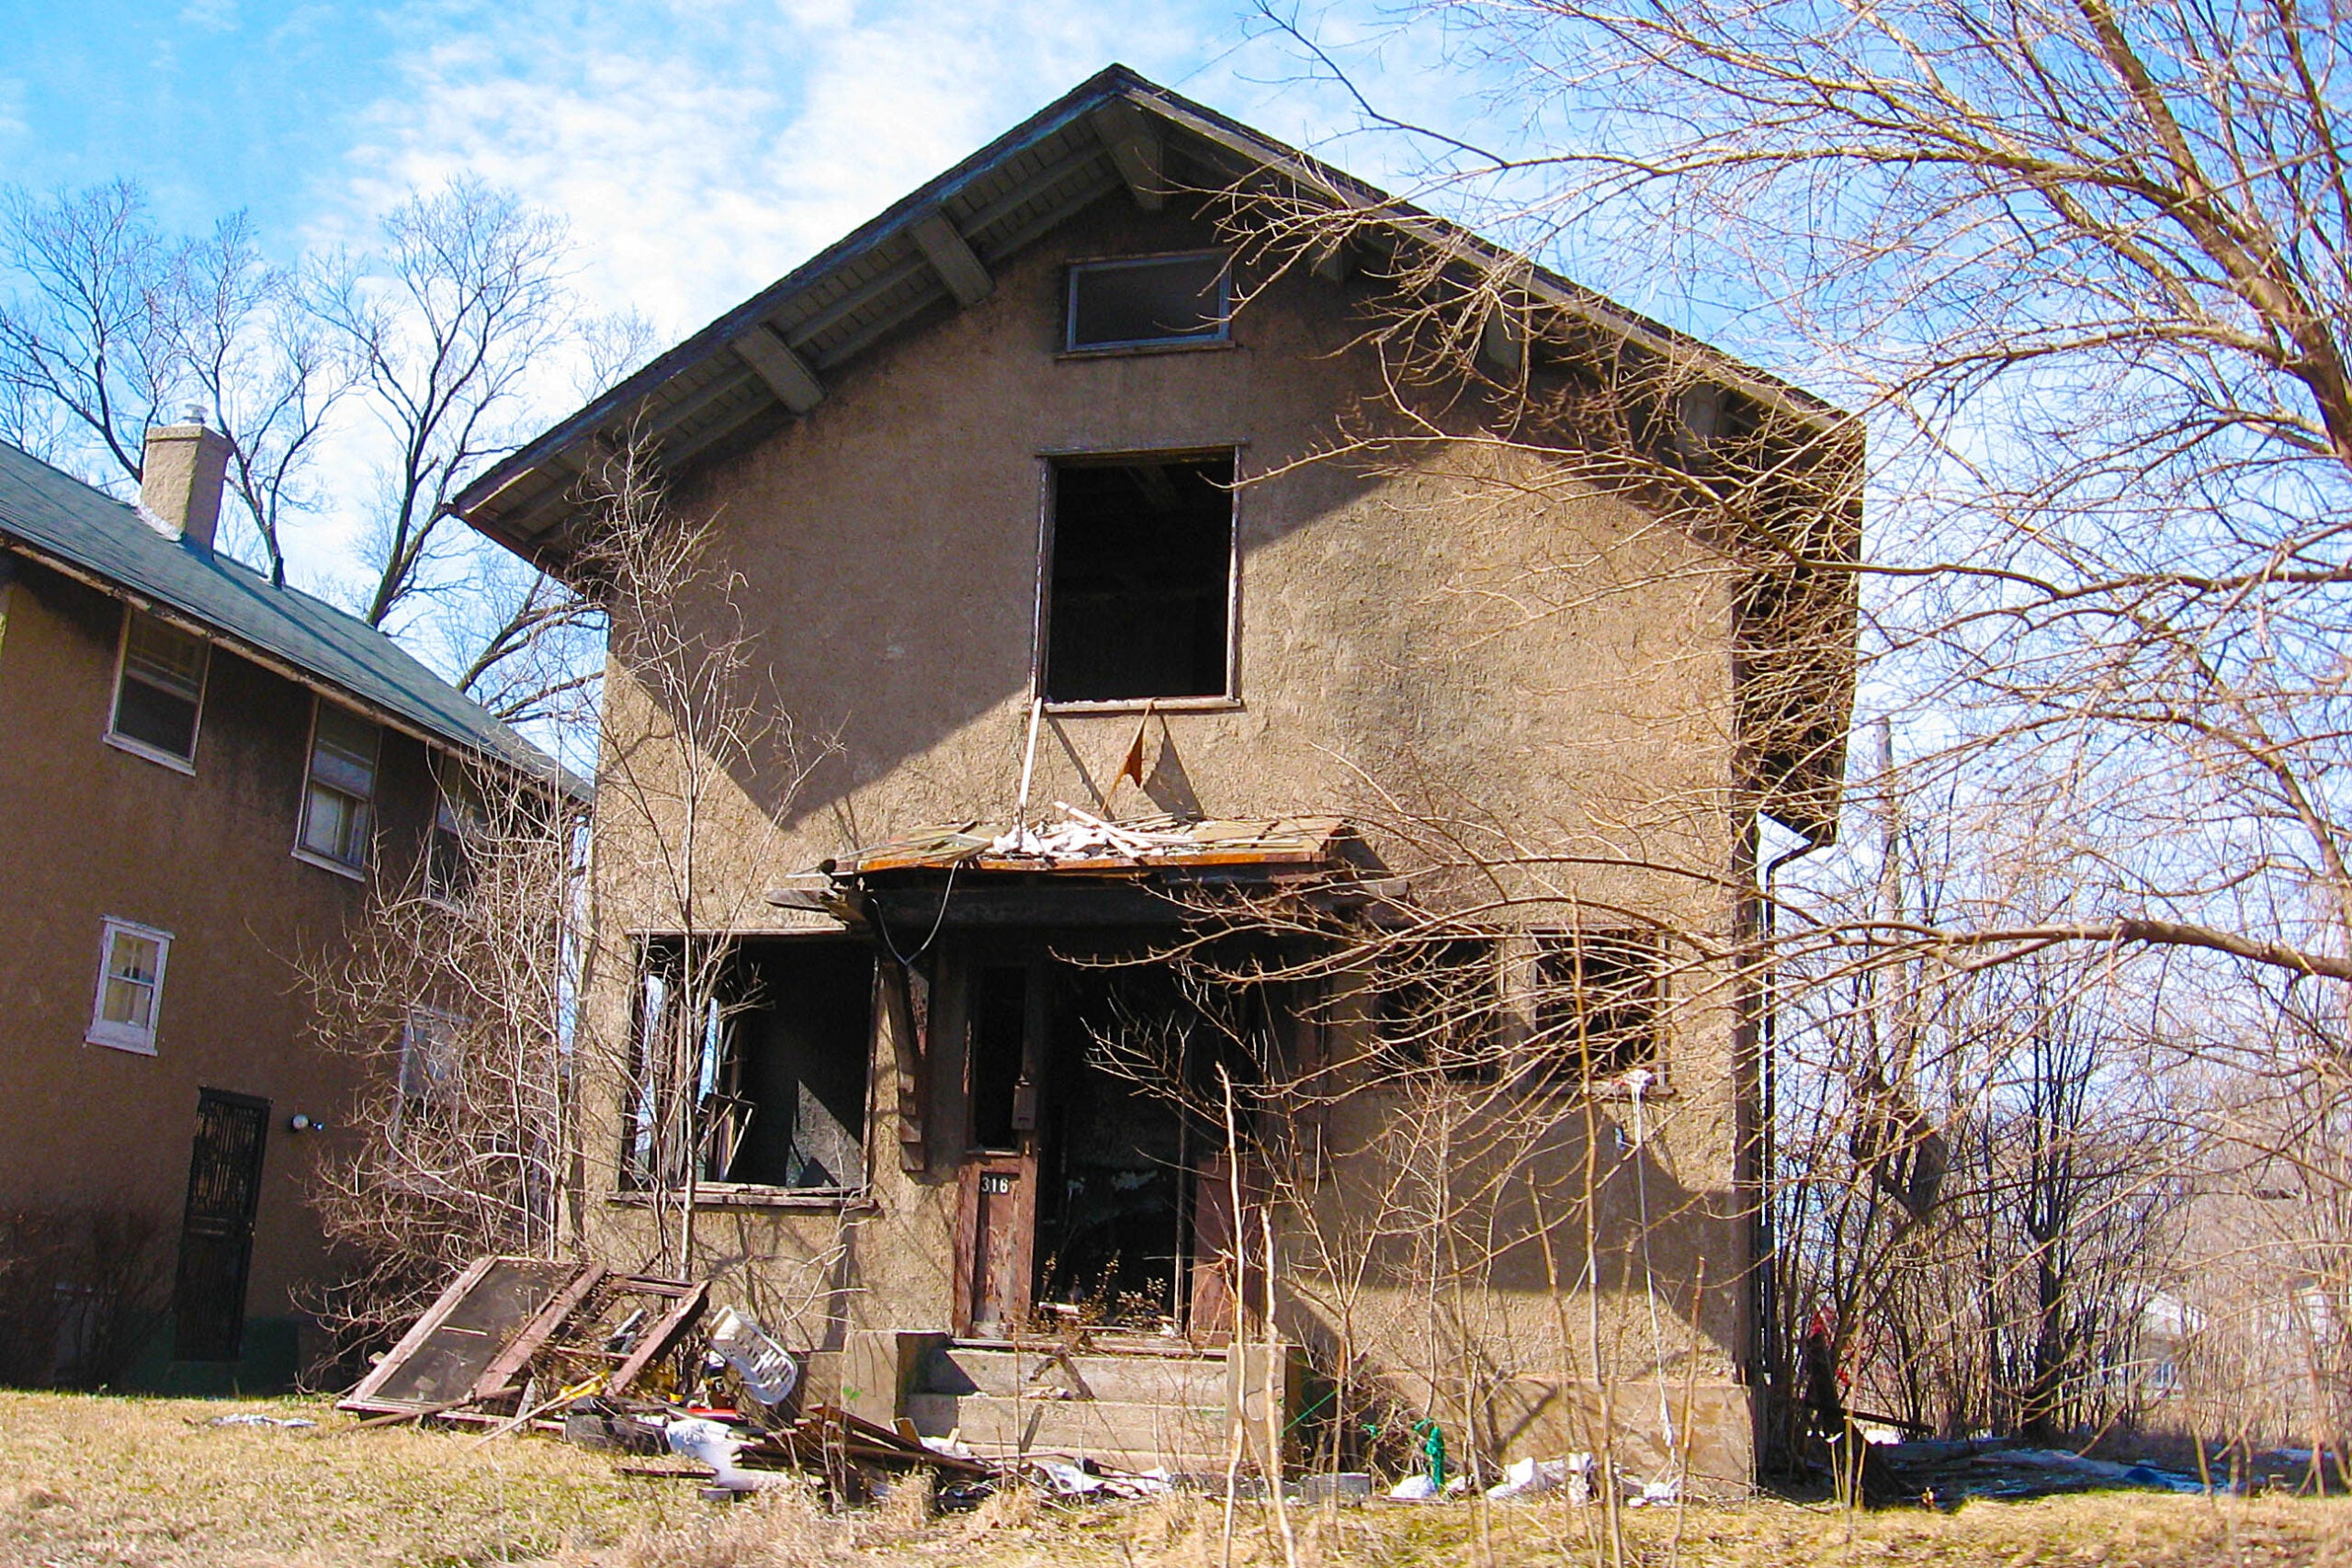 Abandoned house